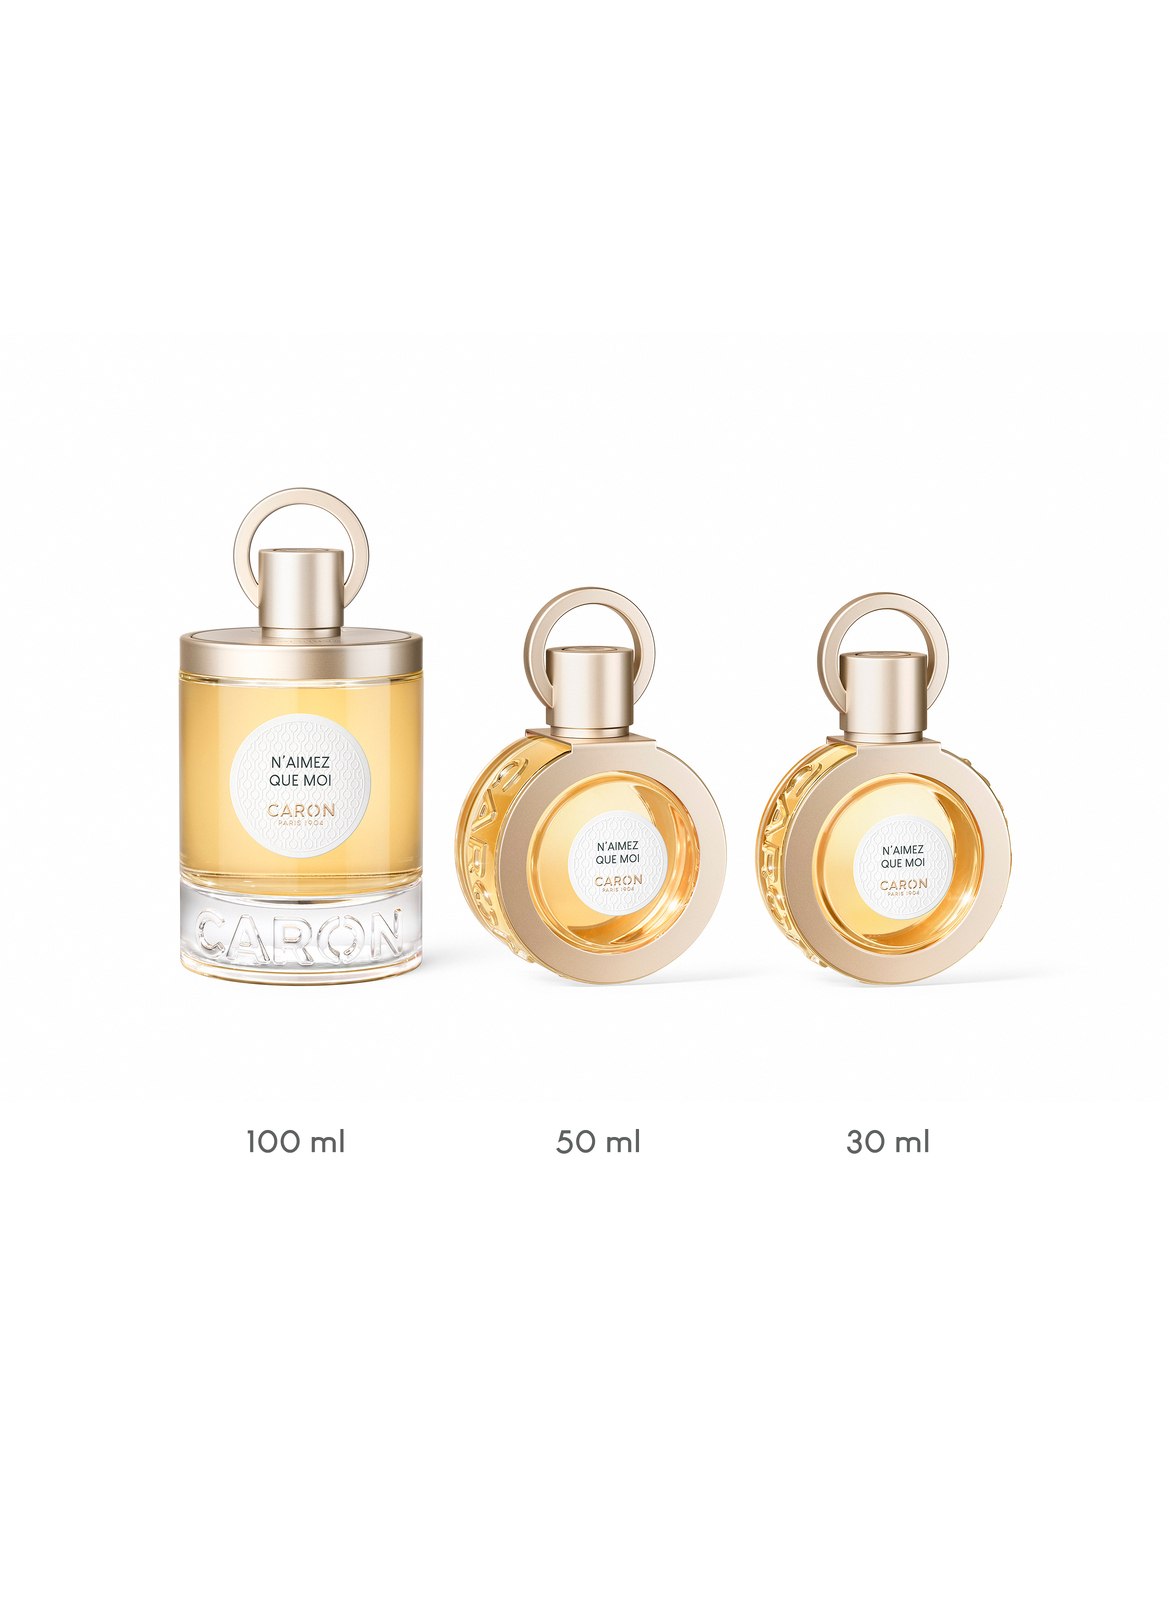 CARON N'Aimez Que Moi Perfume 50ml Refillable